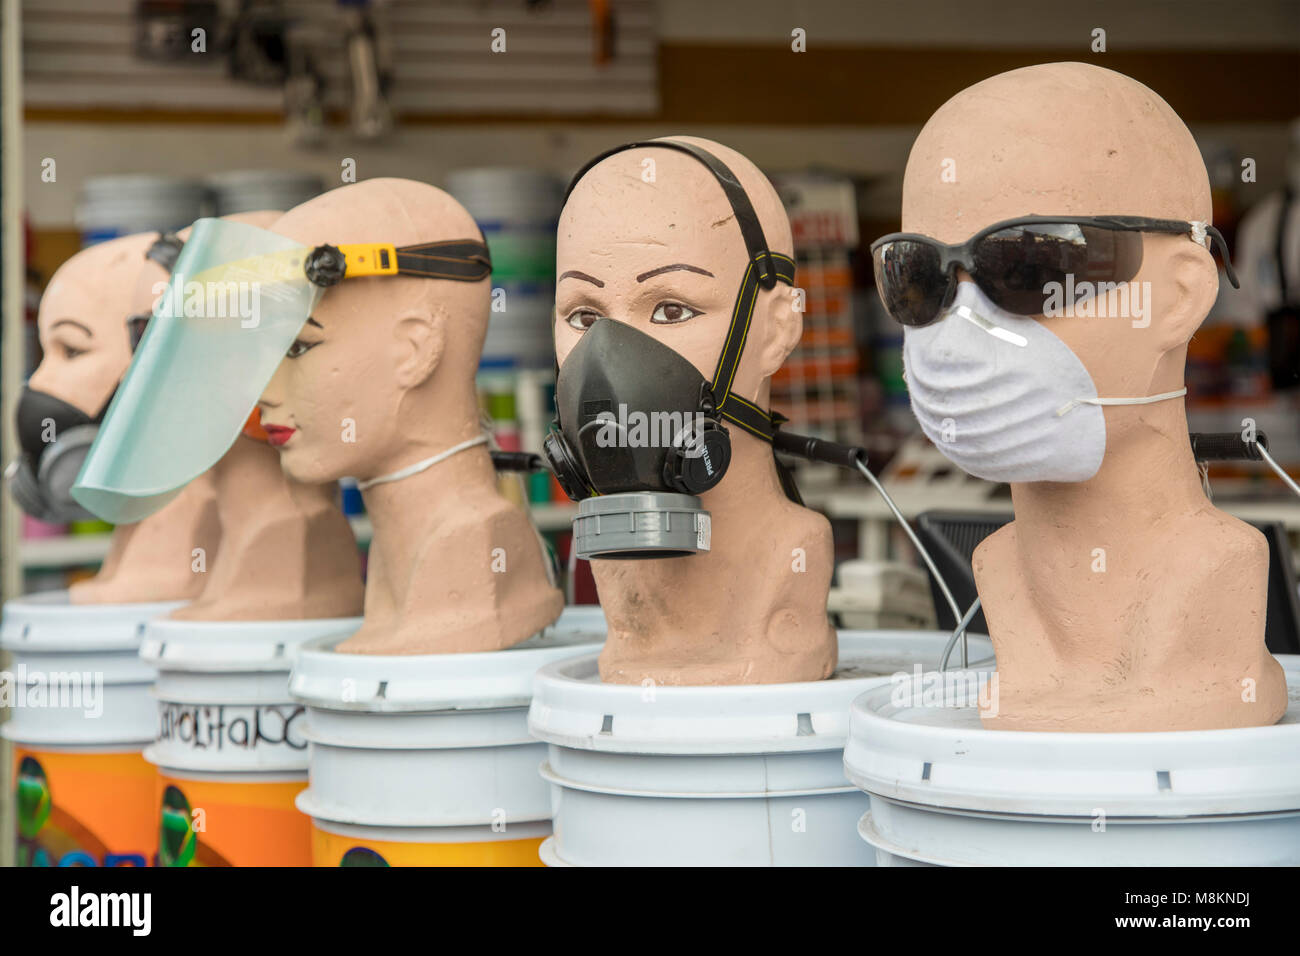 Oaxaca Oax Mexiko Verschiedene Arten Von Schutzmasken Auf Verkauf In Einem Laden In Der Nahe Des Stadtzentrums Stockfotografie Alamy